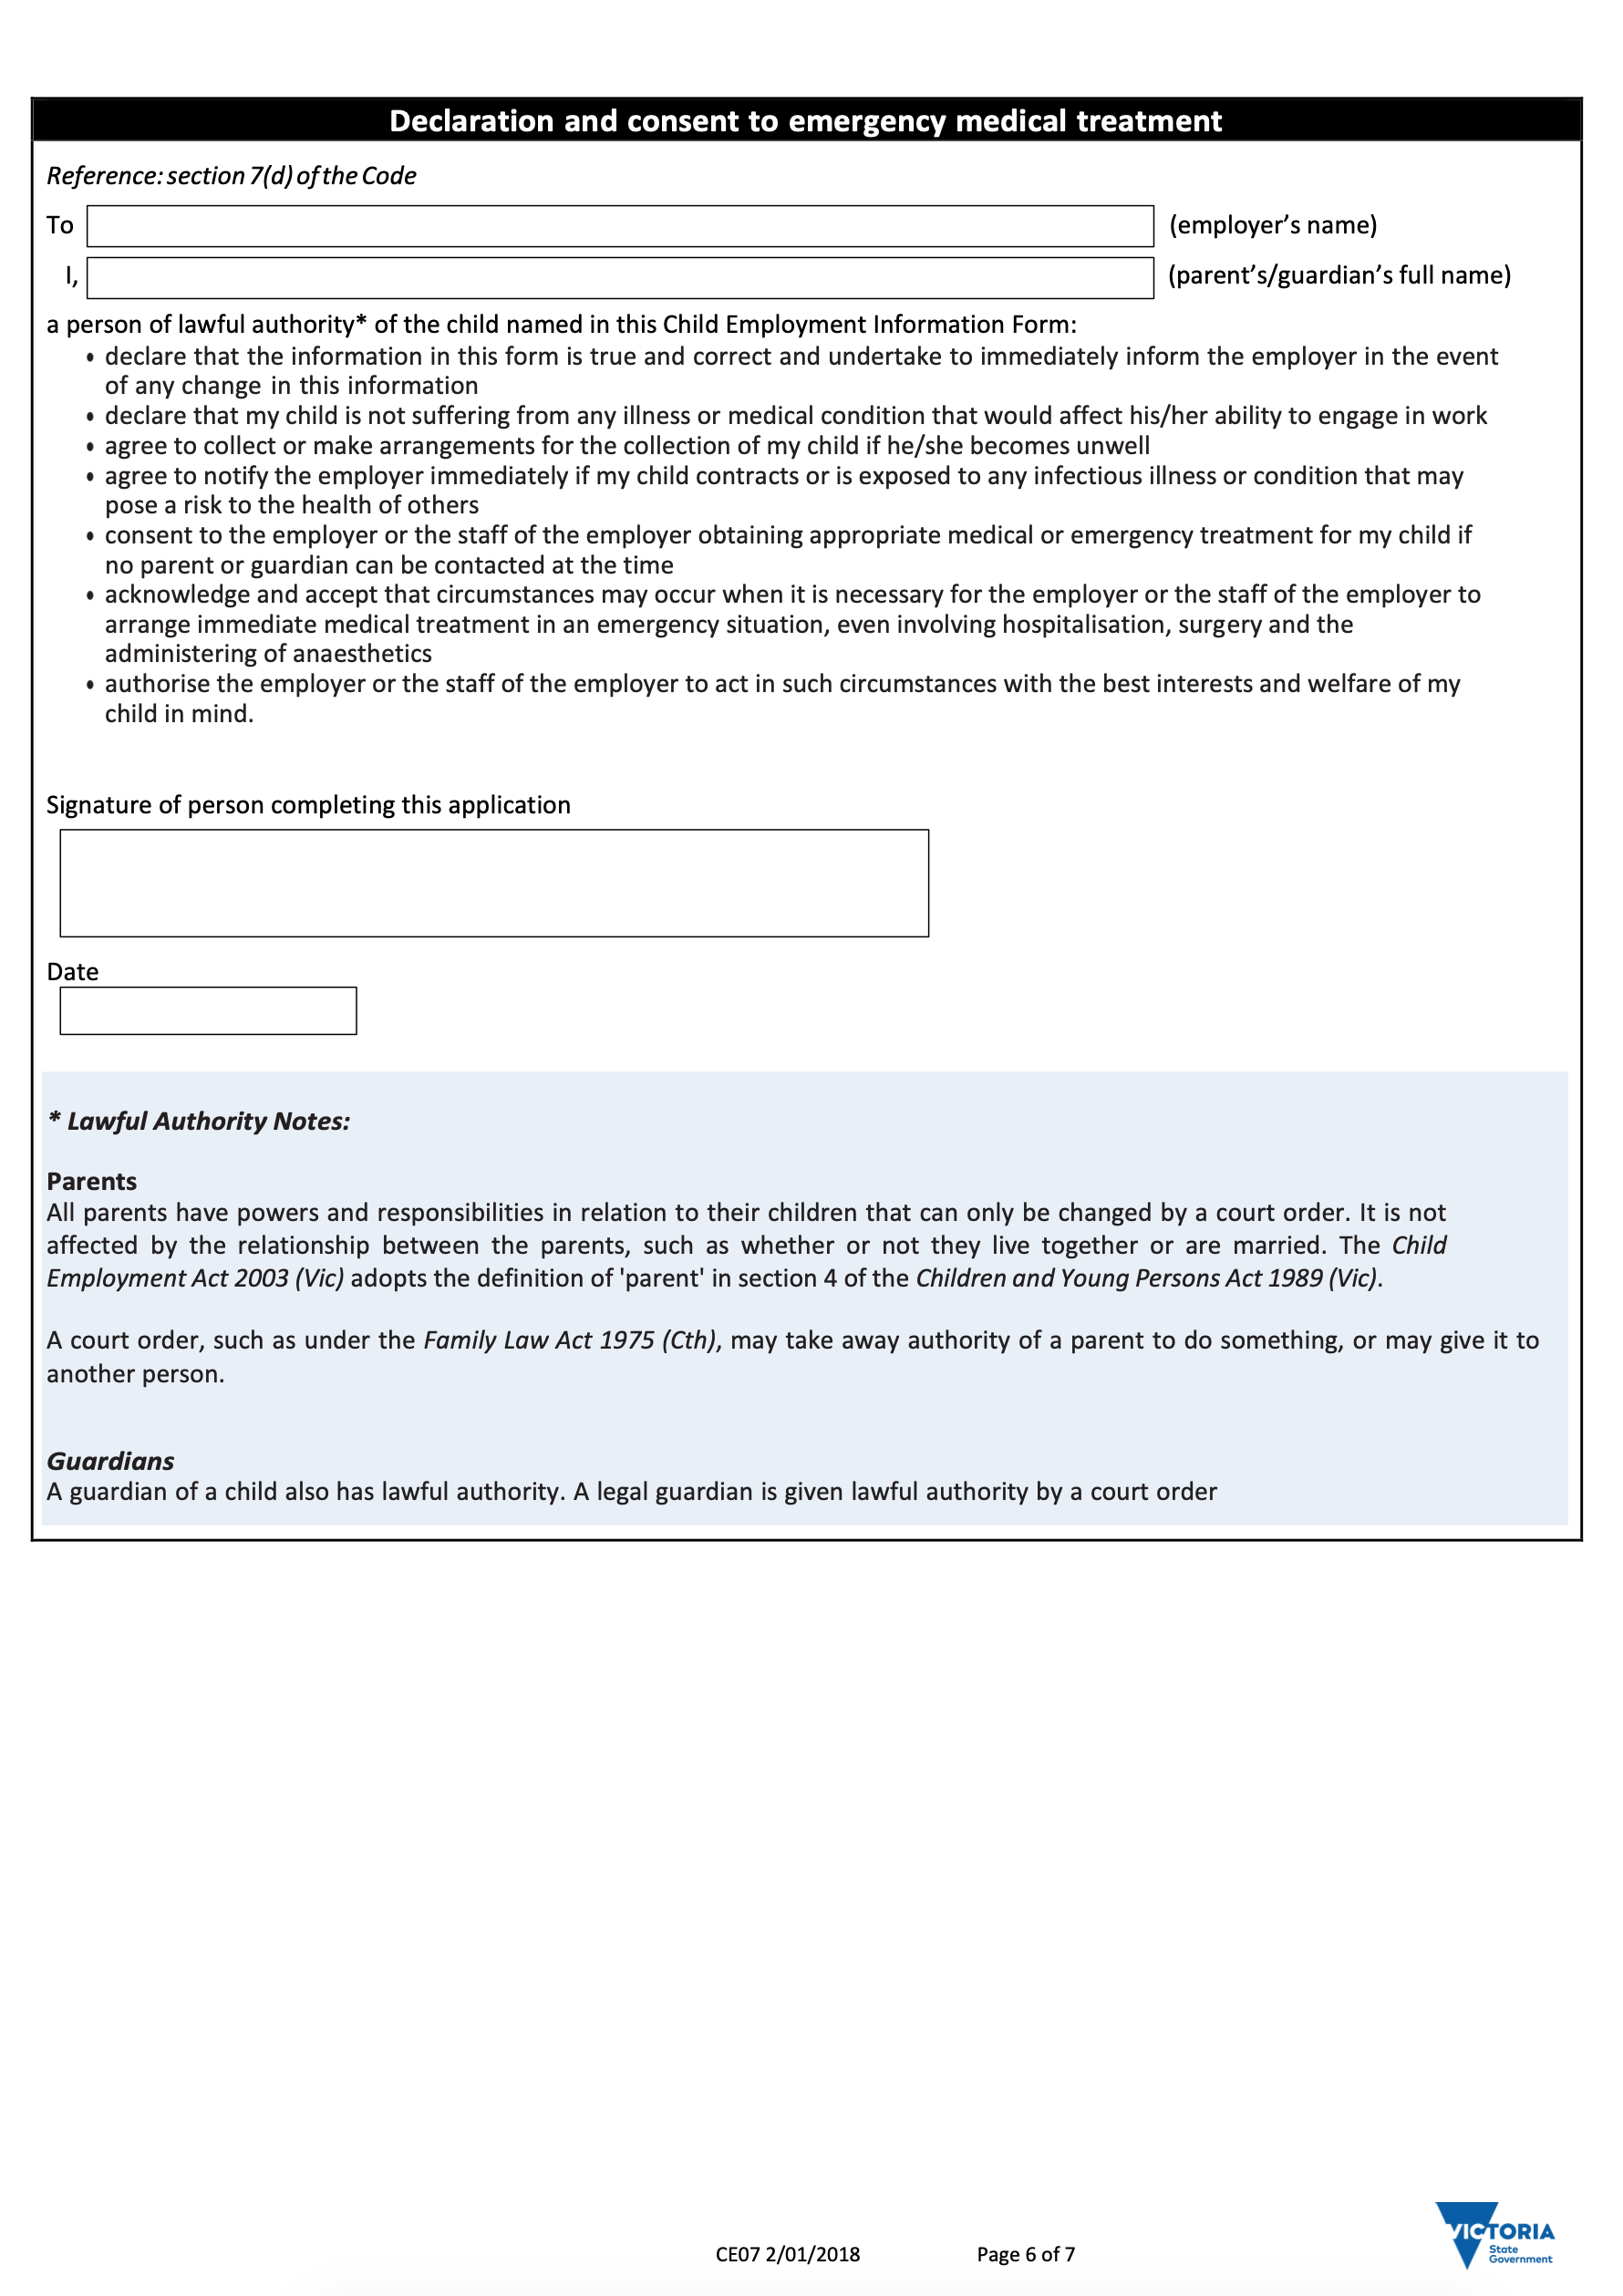 6. Child Employment Information Form